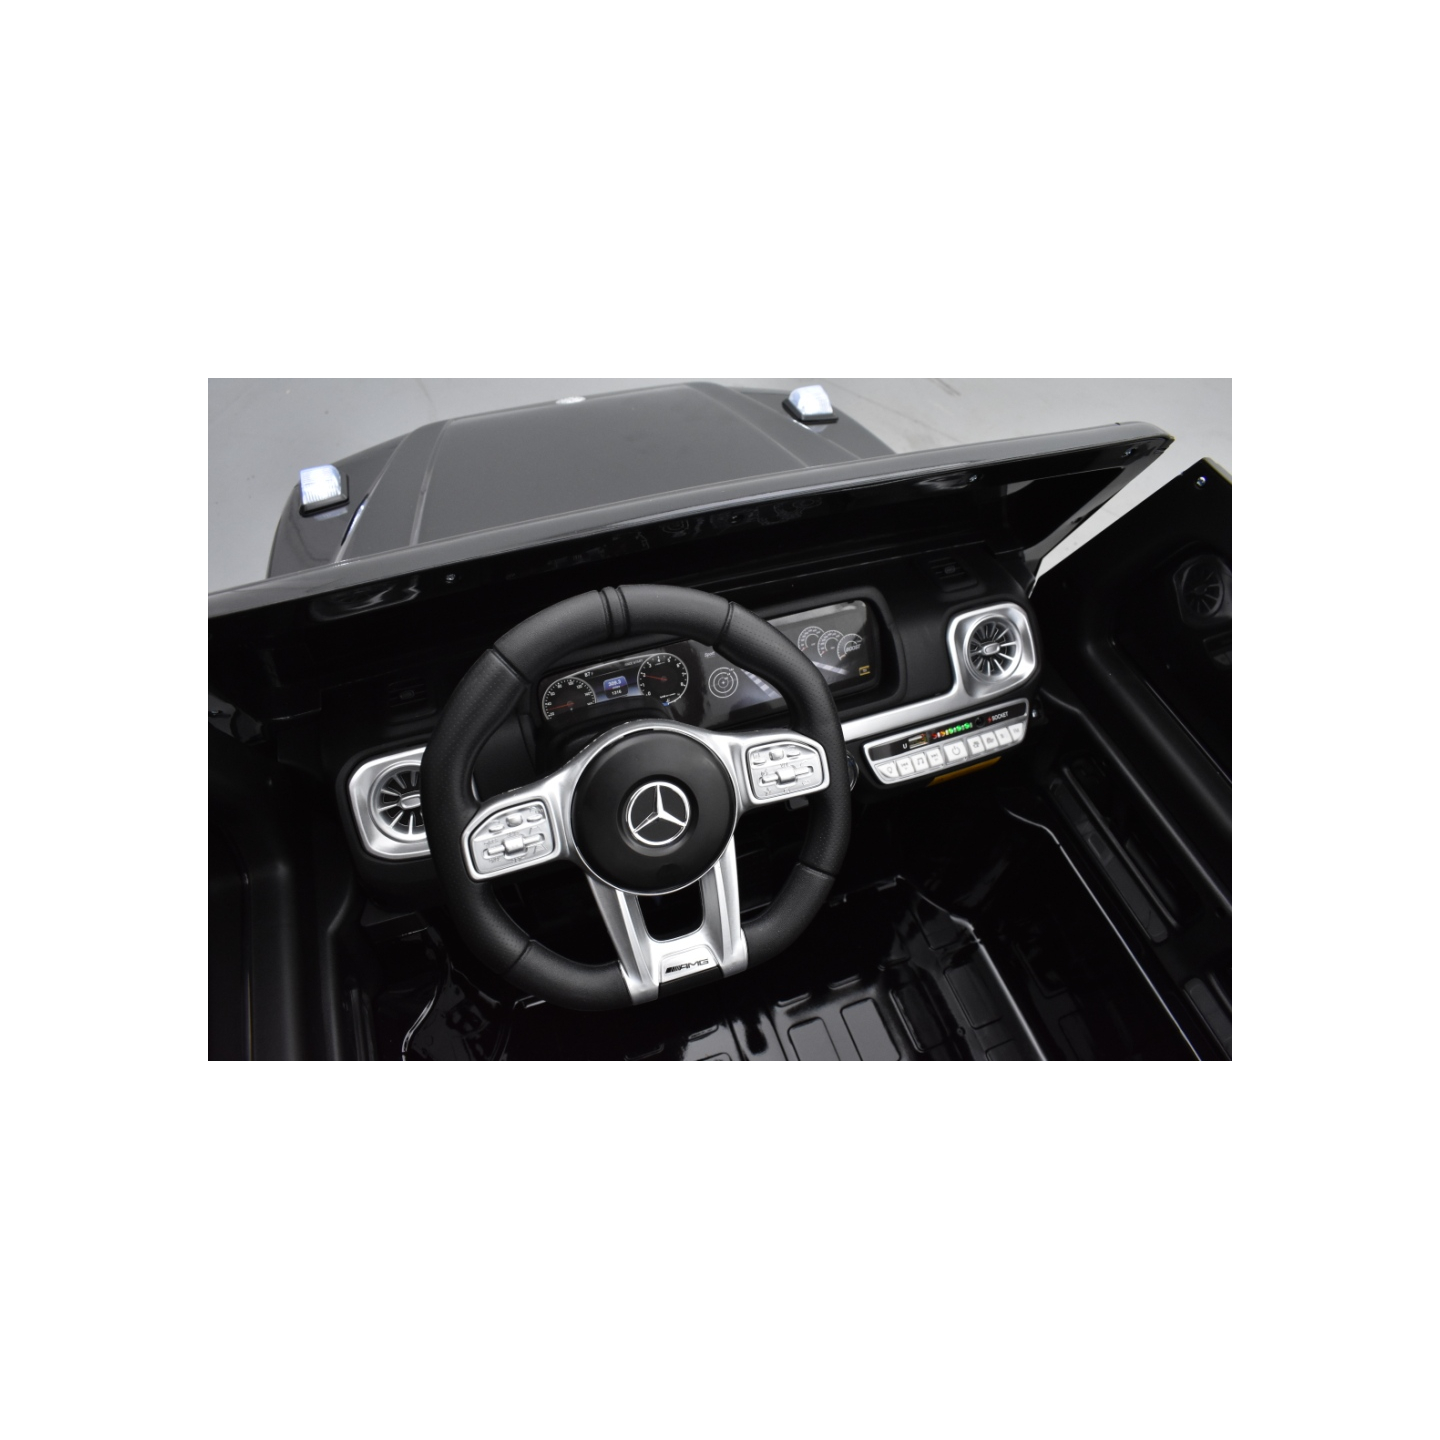 Mercedes G63 AMG 2 places Noir Métallisée, voiture électrique pour enfant, 24 volts - 4 moteurs